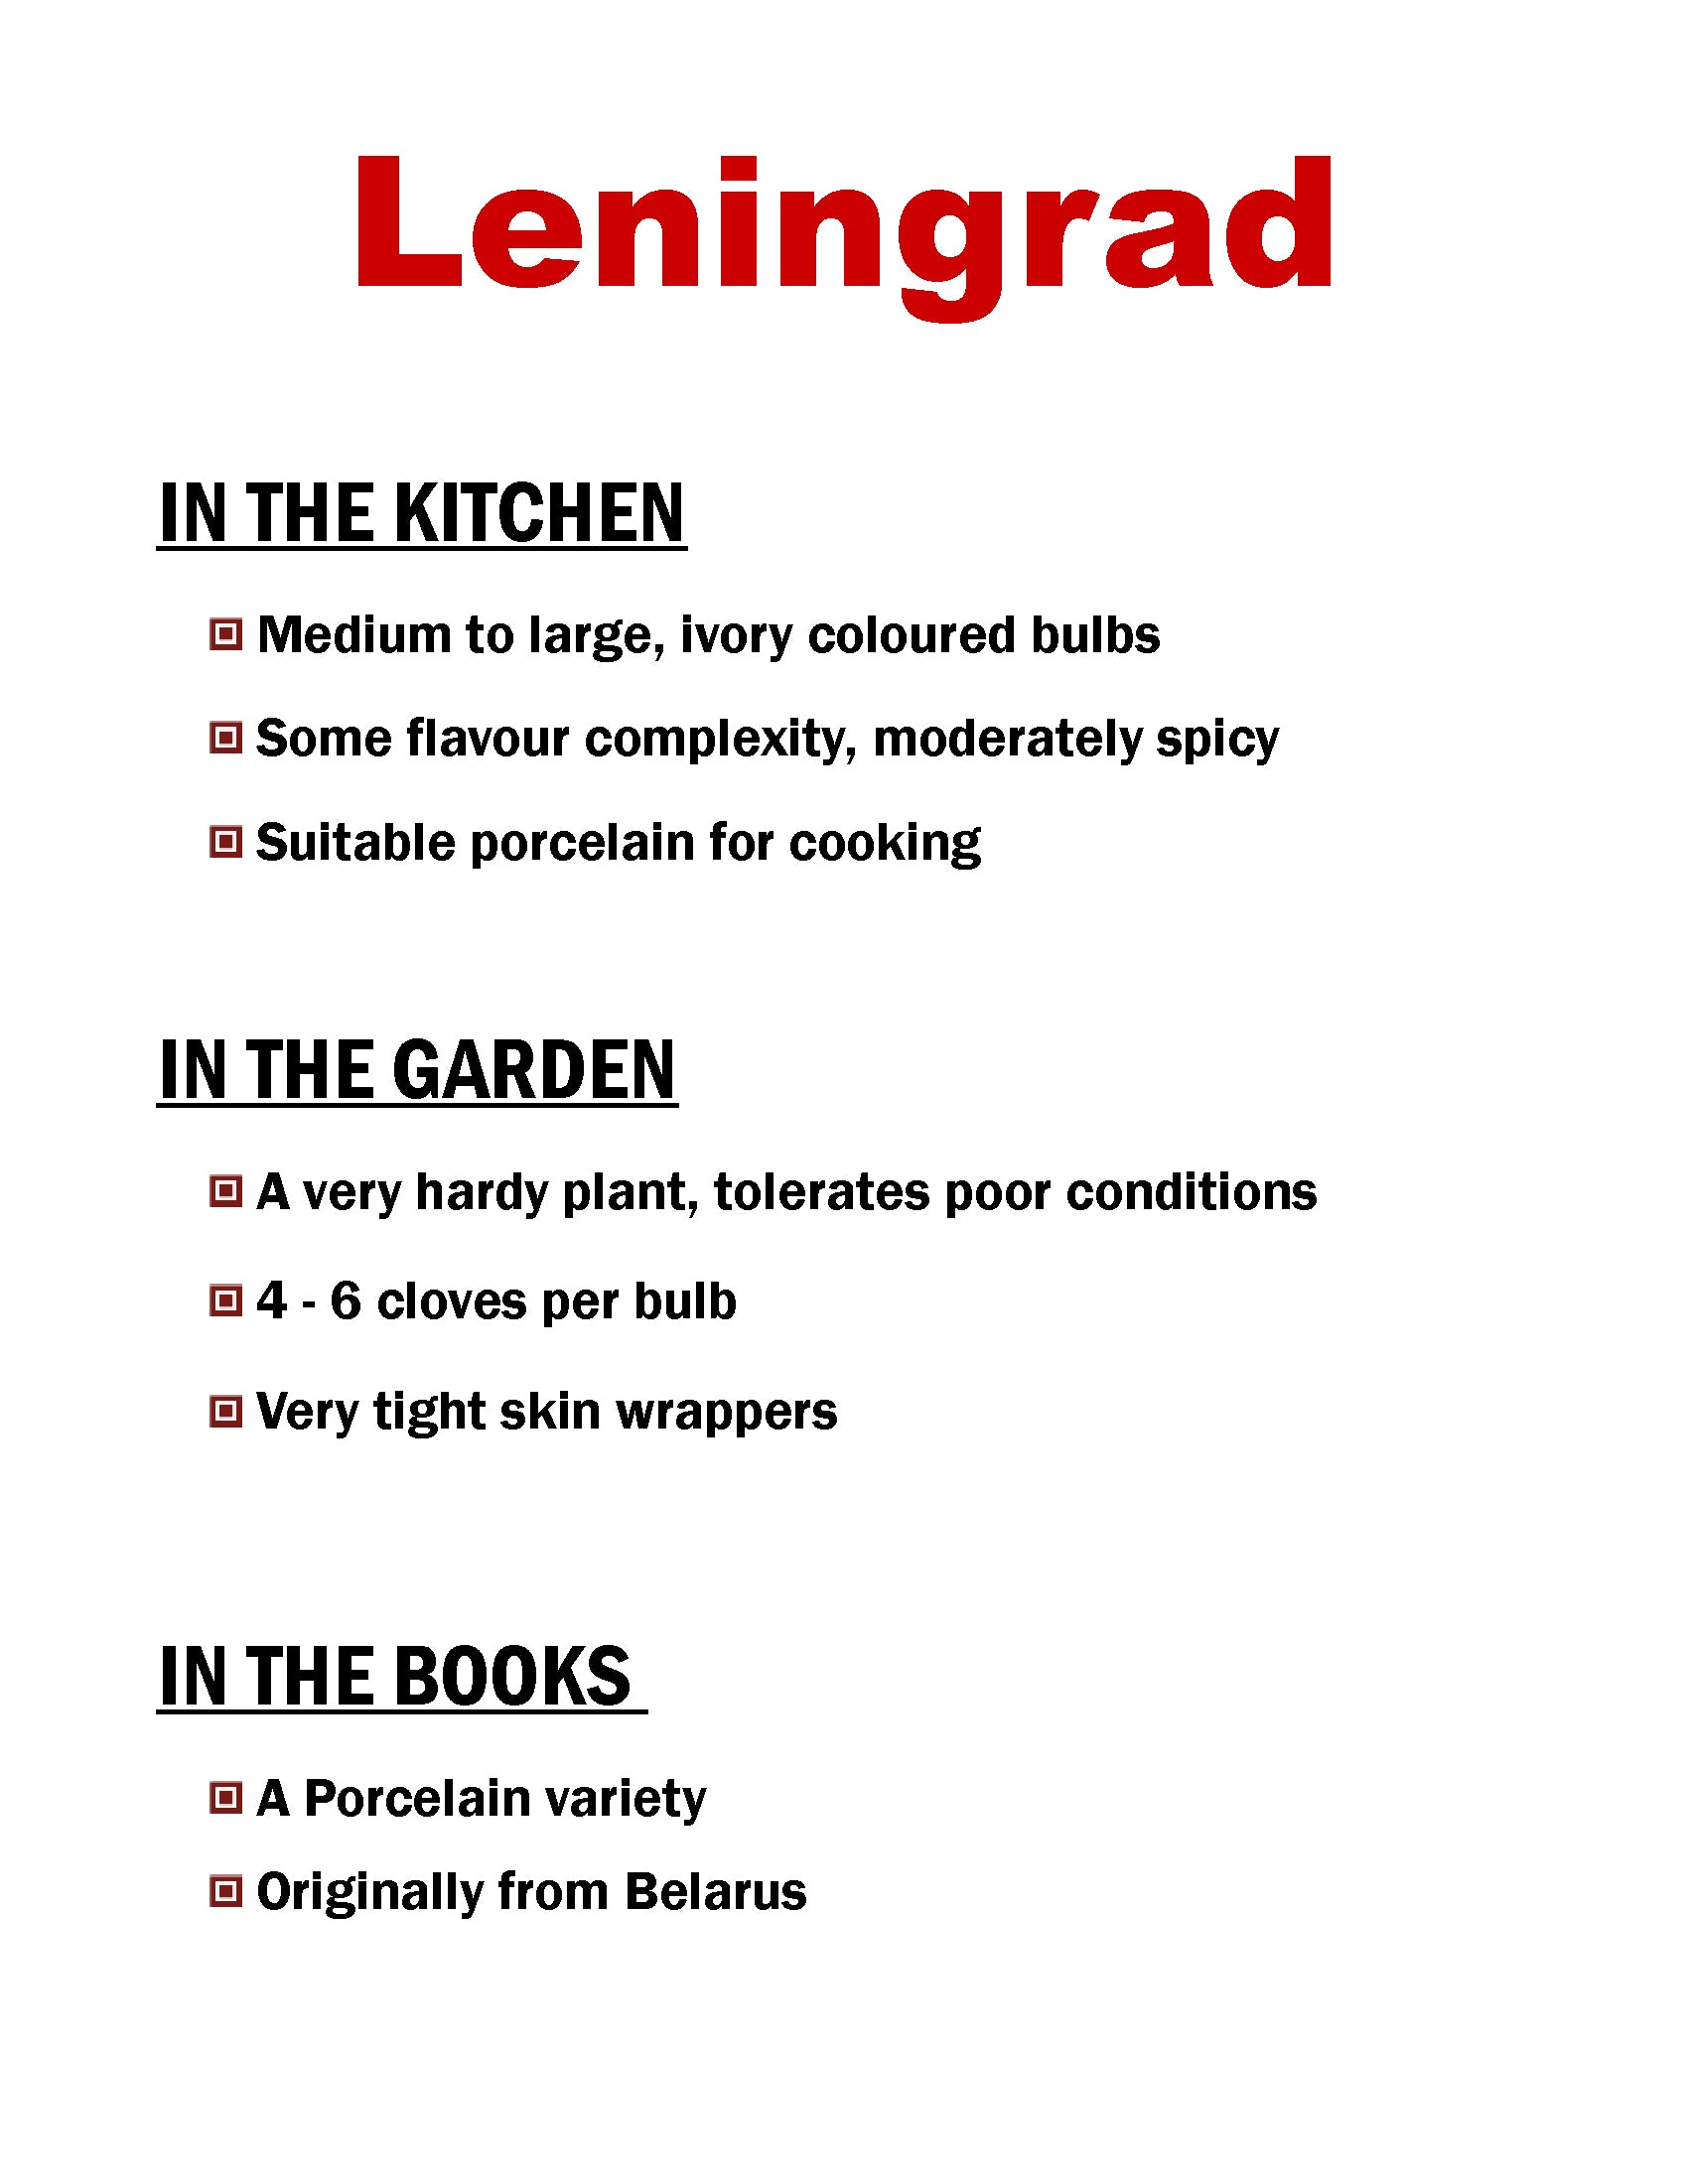 Leningrad garlic, porcelain garlic description card by Garlicloves